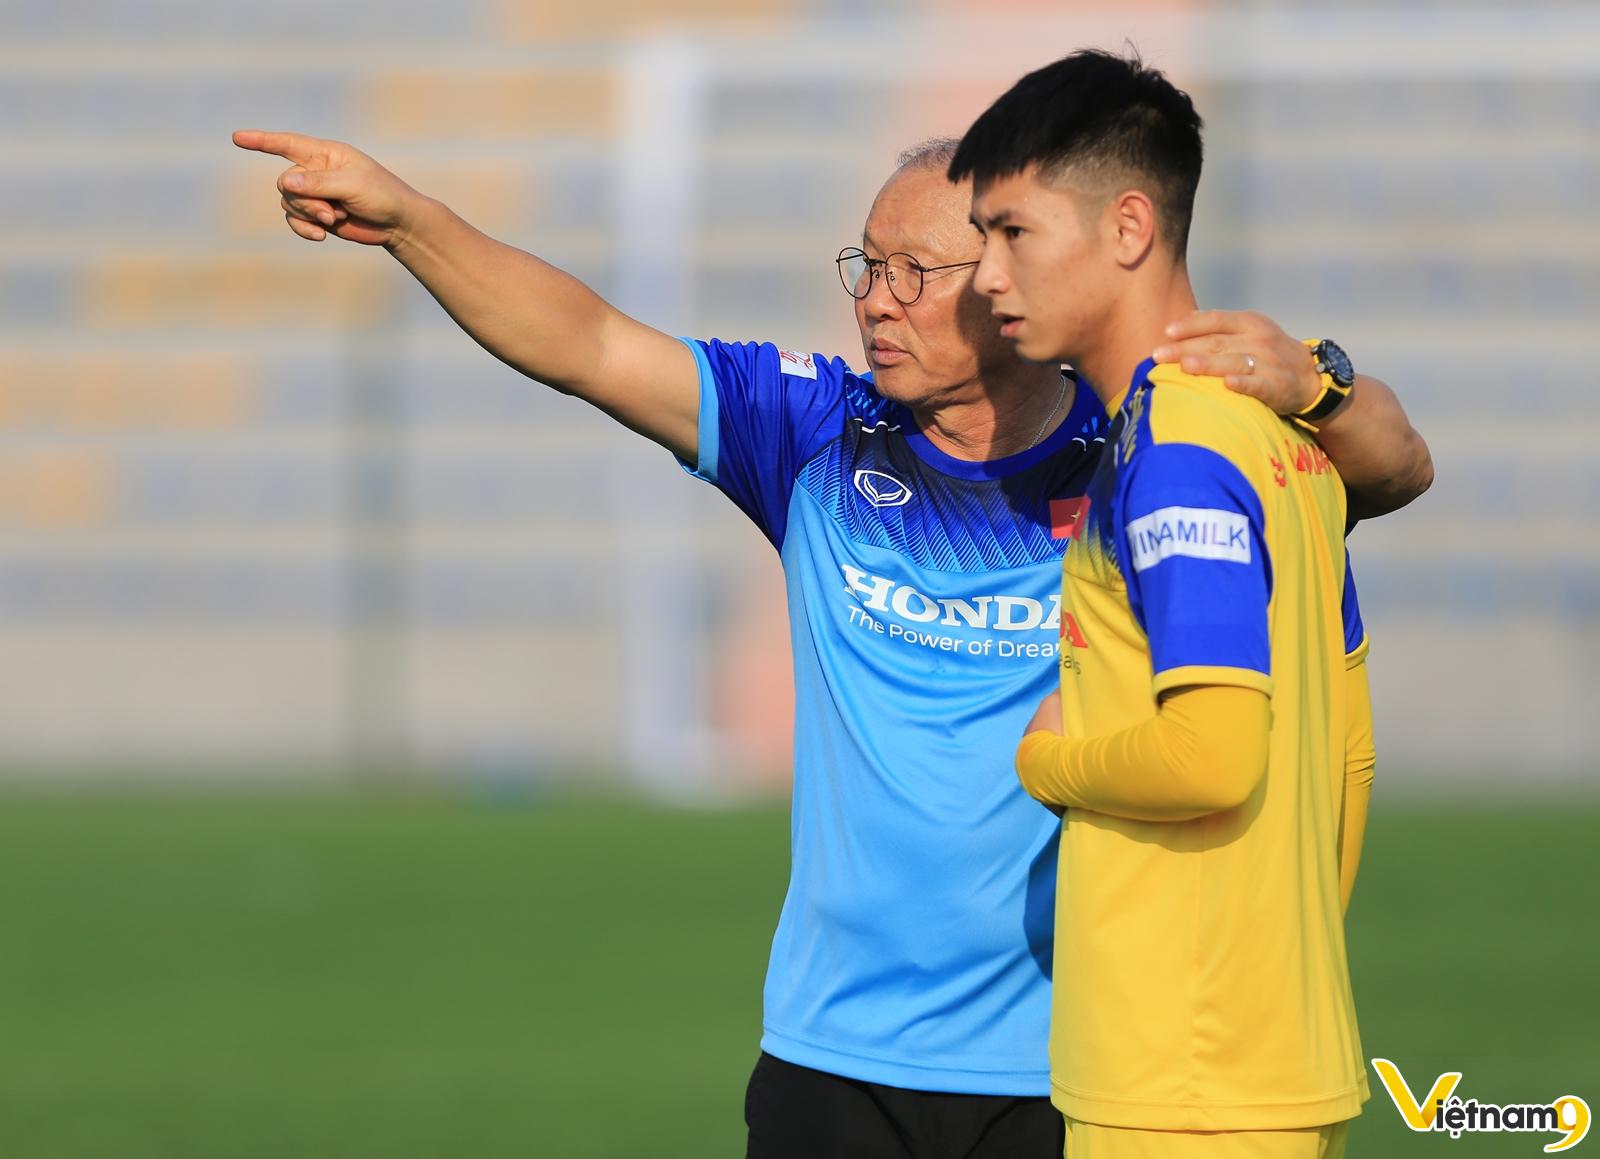 Photo of U23 châu Á 2020: Nguyễn Trọng Hùng,  điều không thể thành có thể?